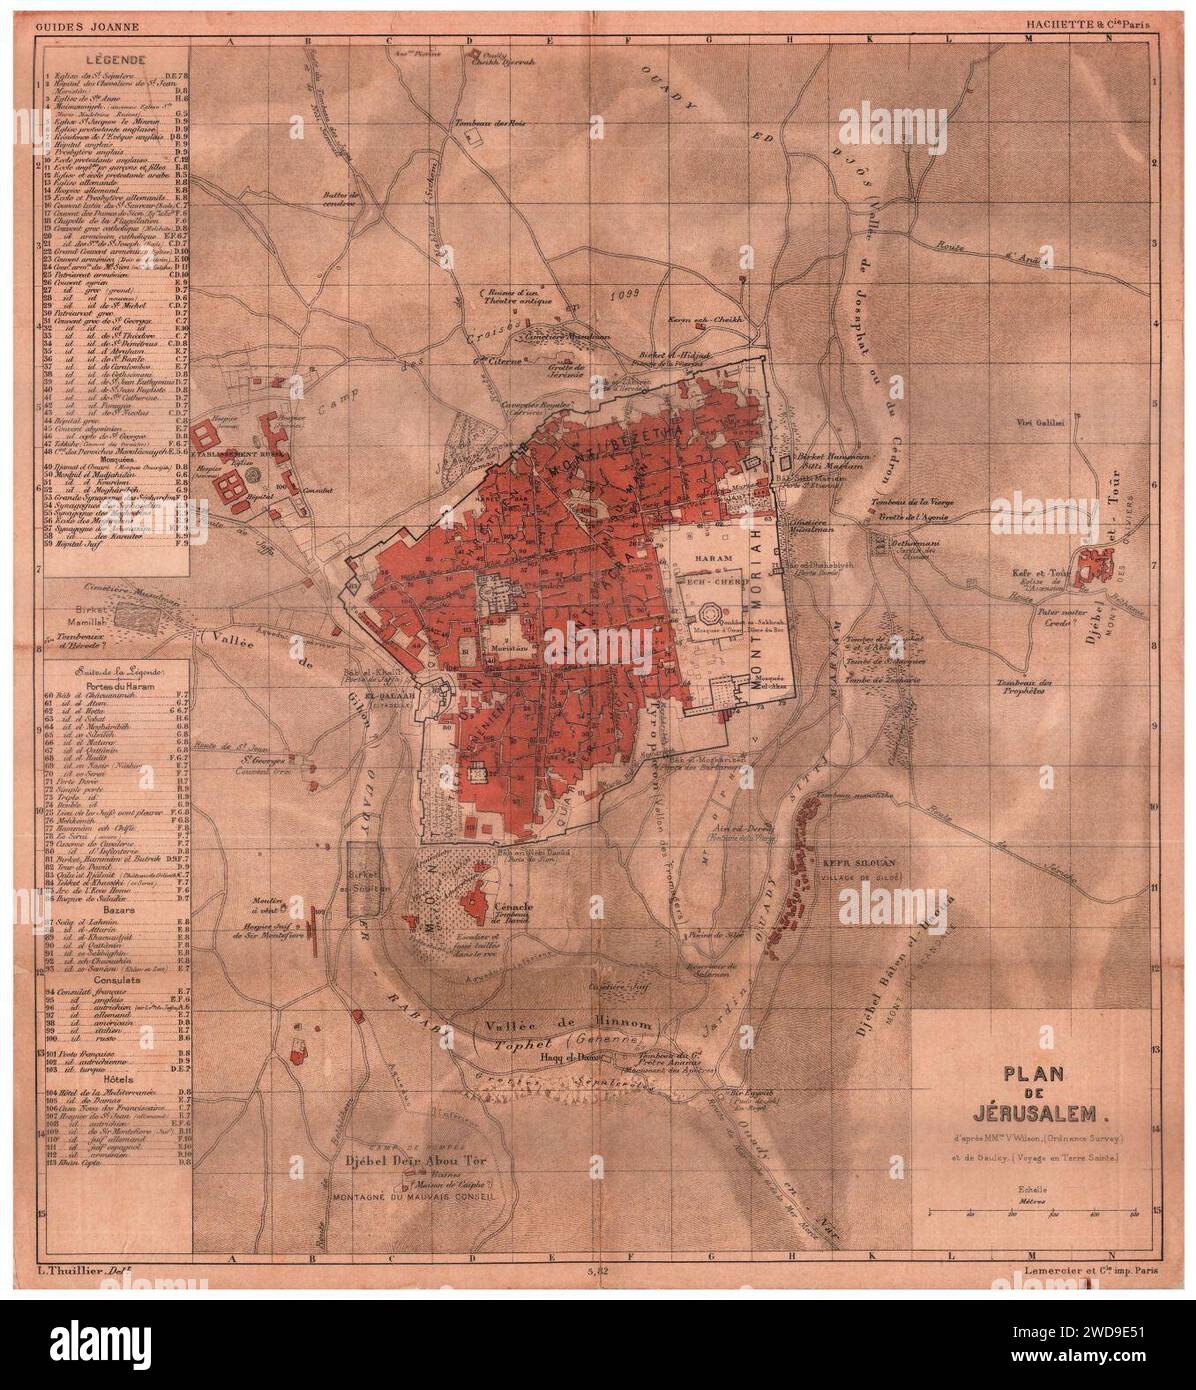 1890 map - Plan de Jérusalem - L. Thuillier delt ; d'après Mrs. V.Wilson (Ordnance Survey) et de Saulcy (Voyage en Terre Sainte). Stock Photo